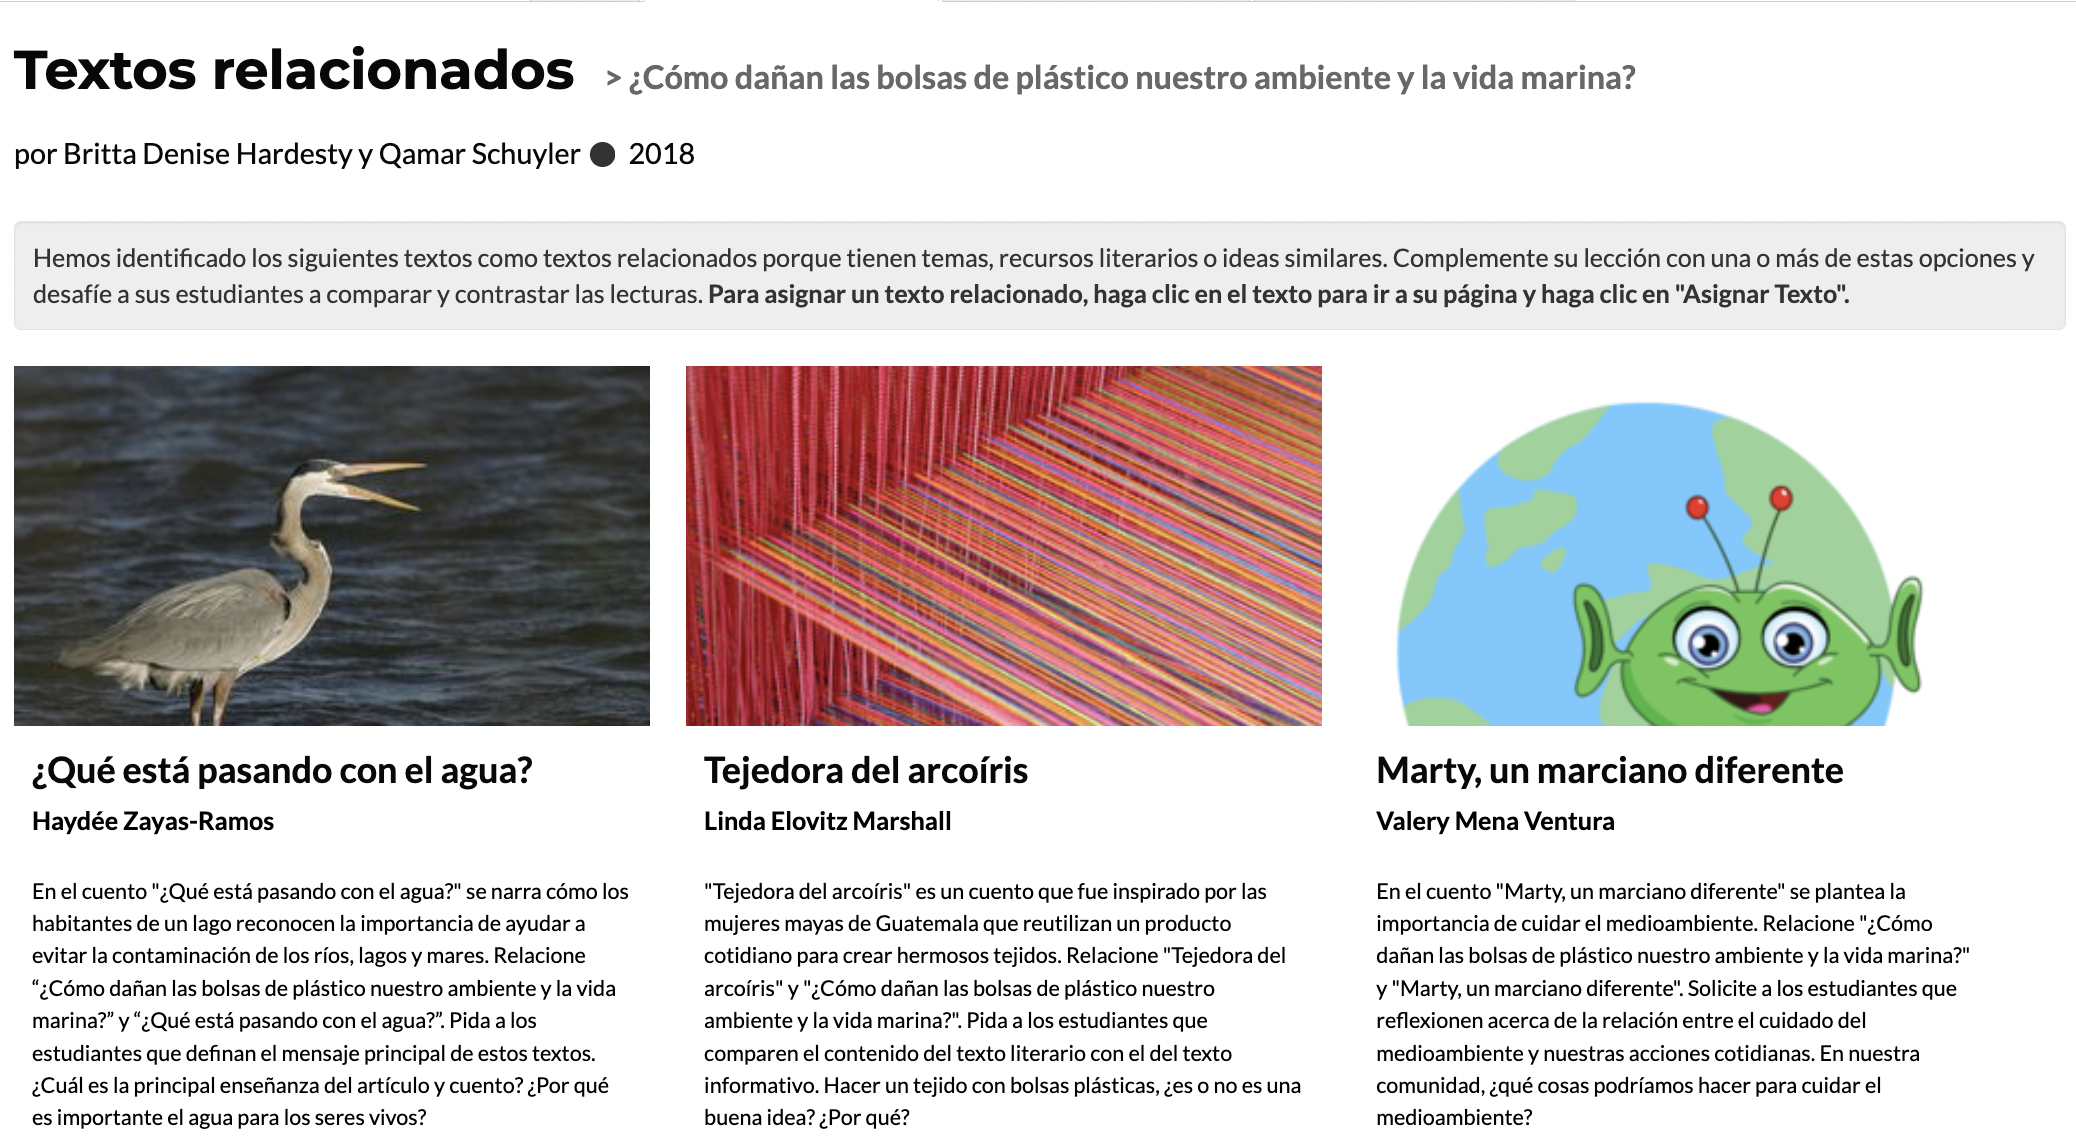 Página de Textos relacionados del texto "¿Cómo dañan las bolsas de plástico nuestro ambiente y la vida marina?" en la plataforma CommonLit